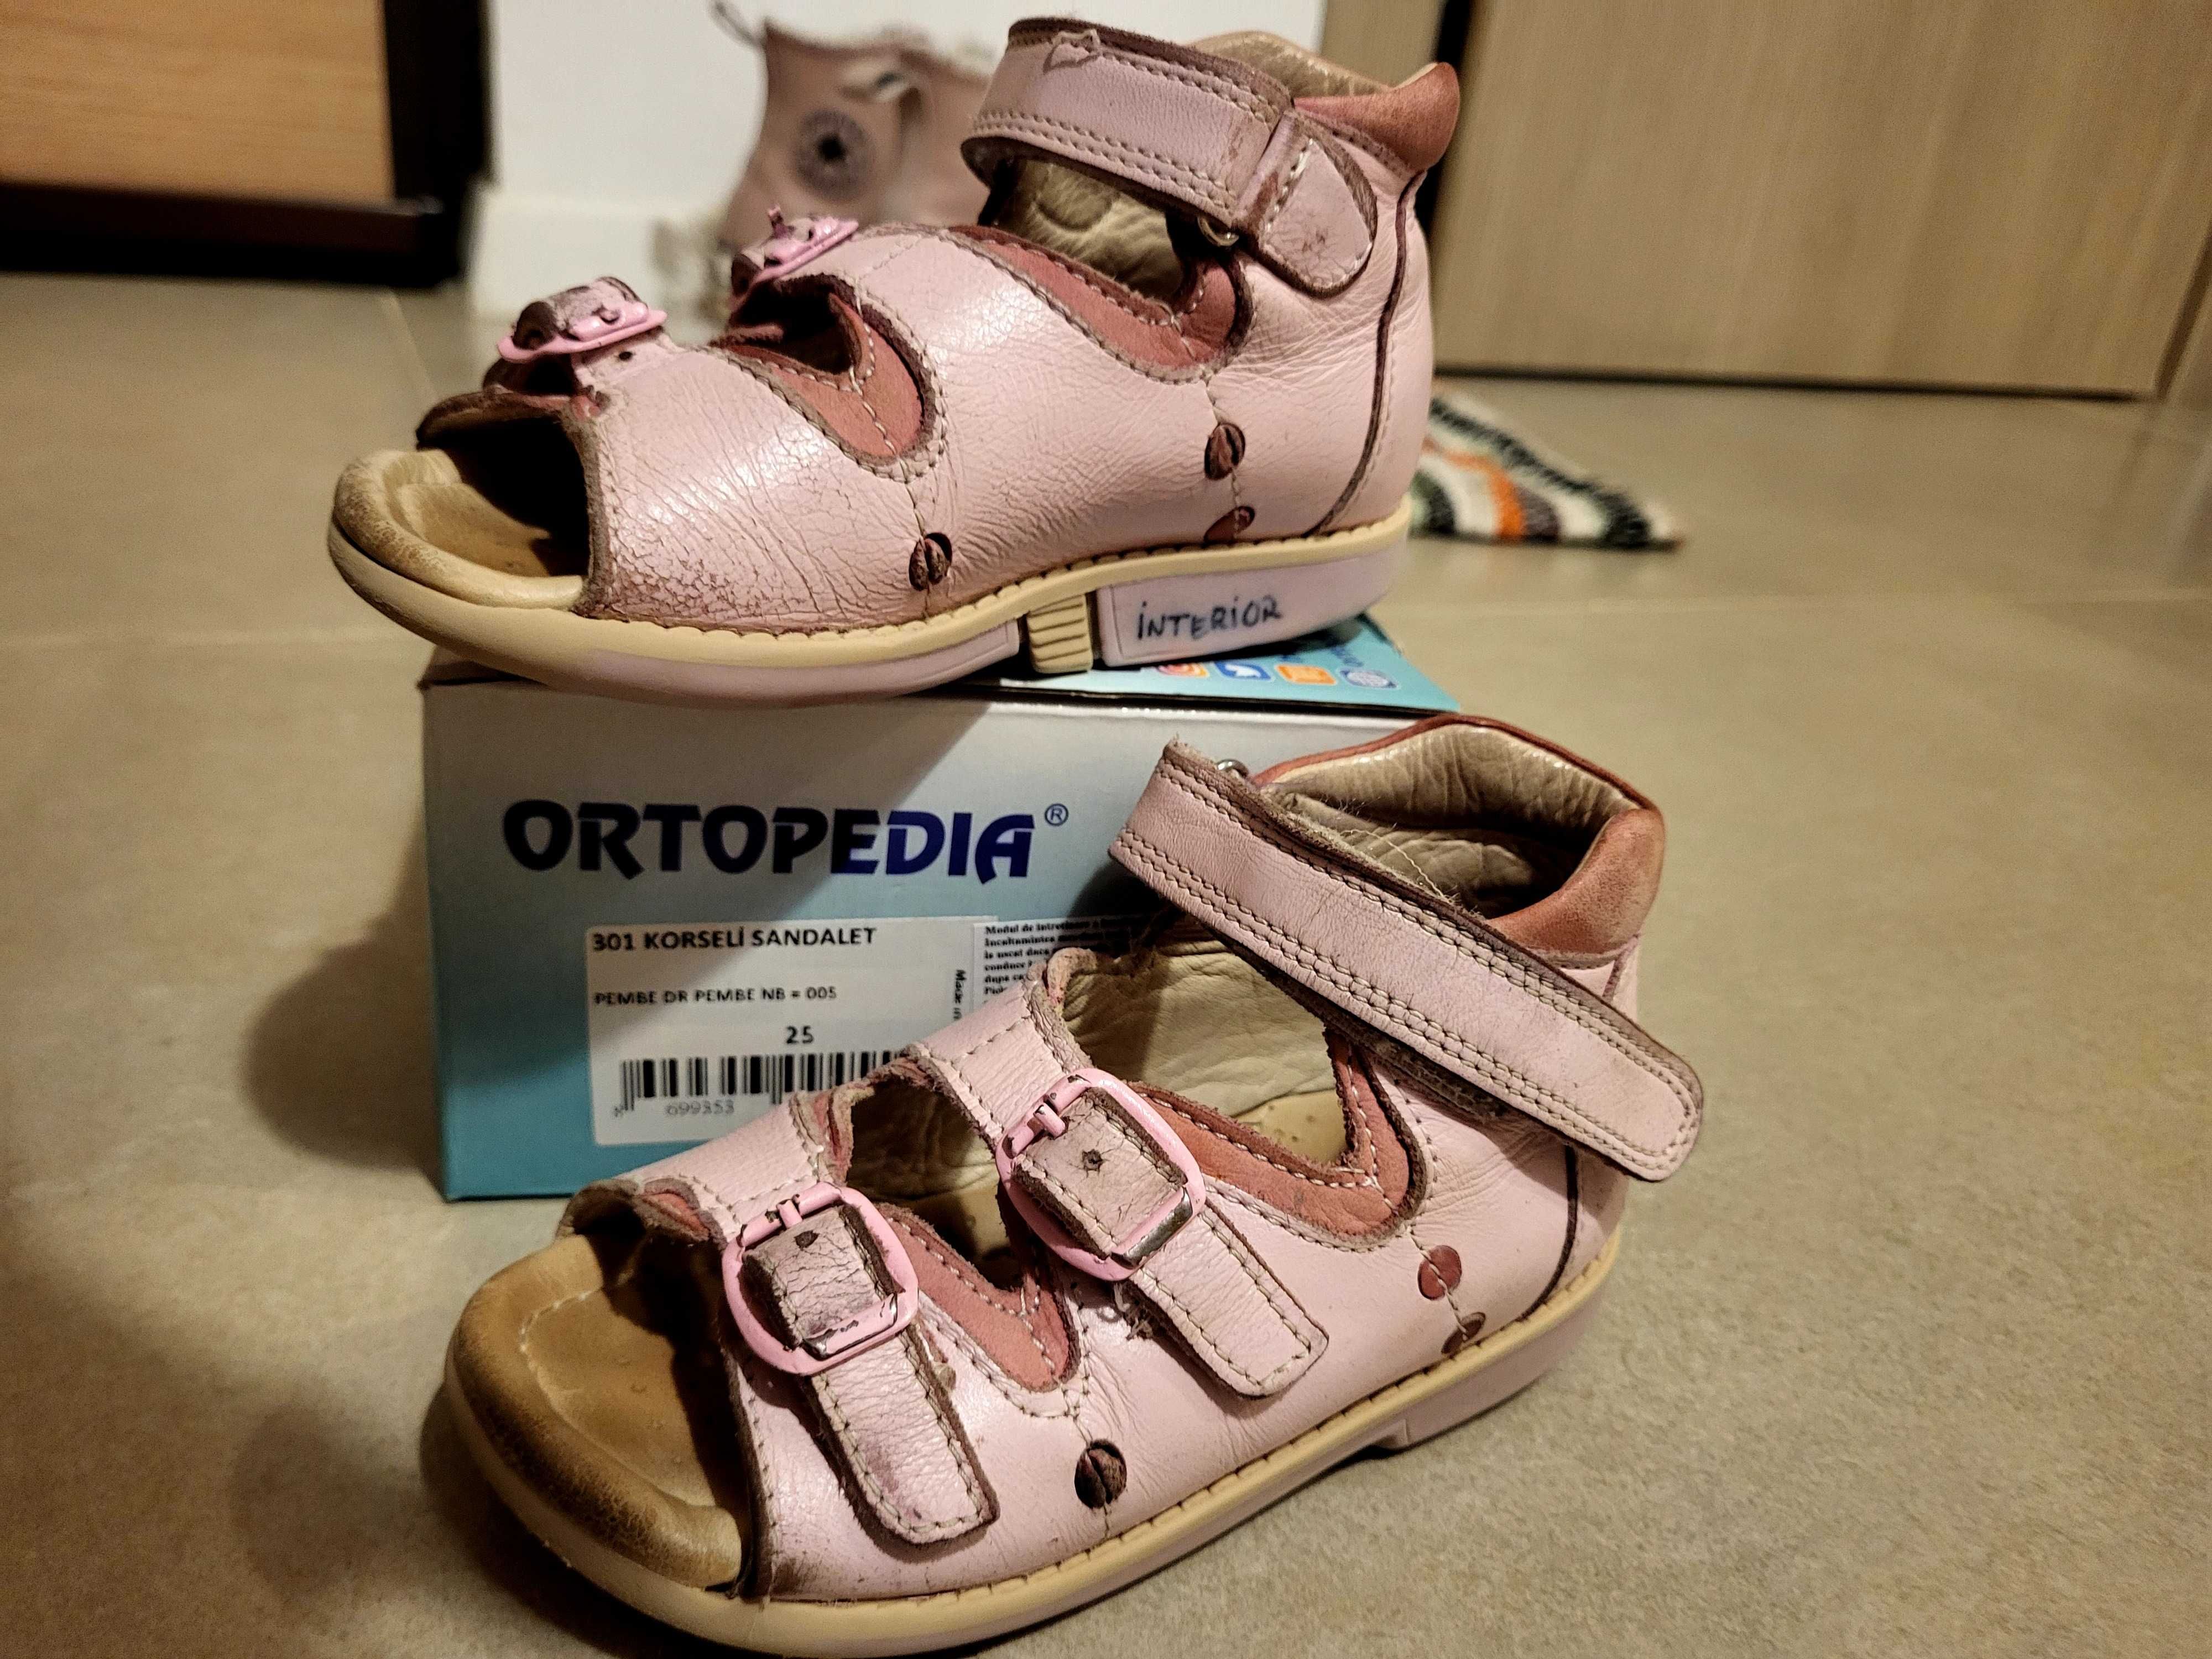 Sandale Ortopedia 25 roz